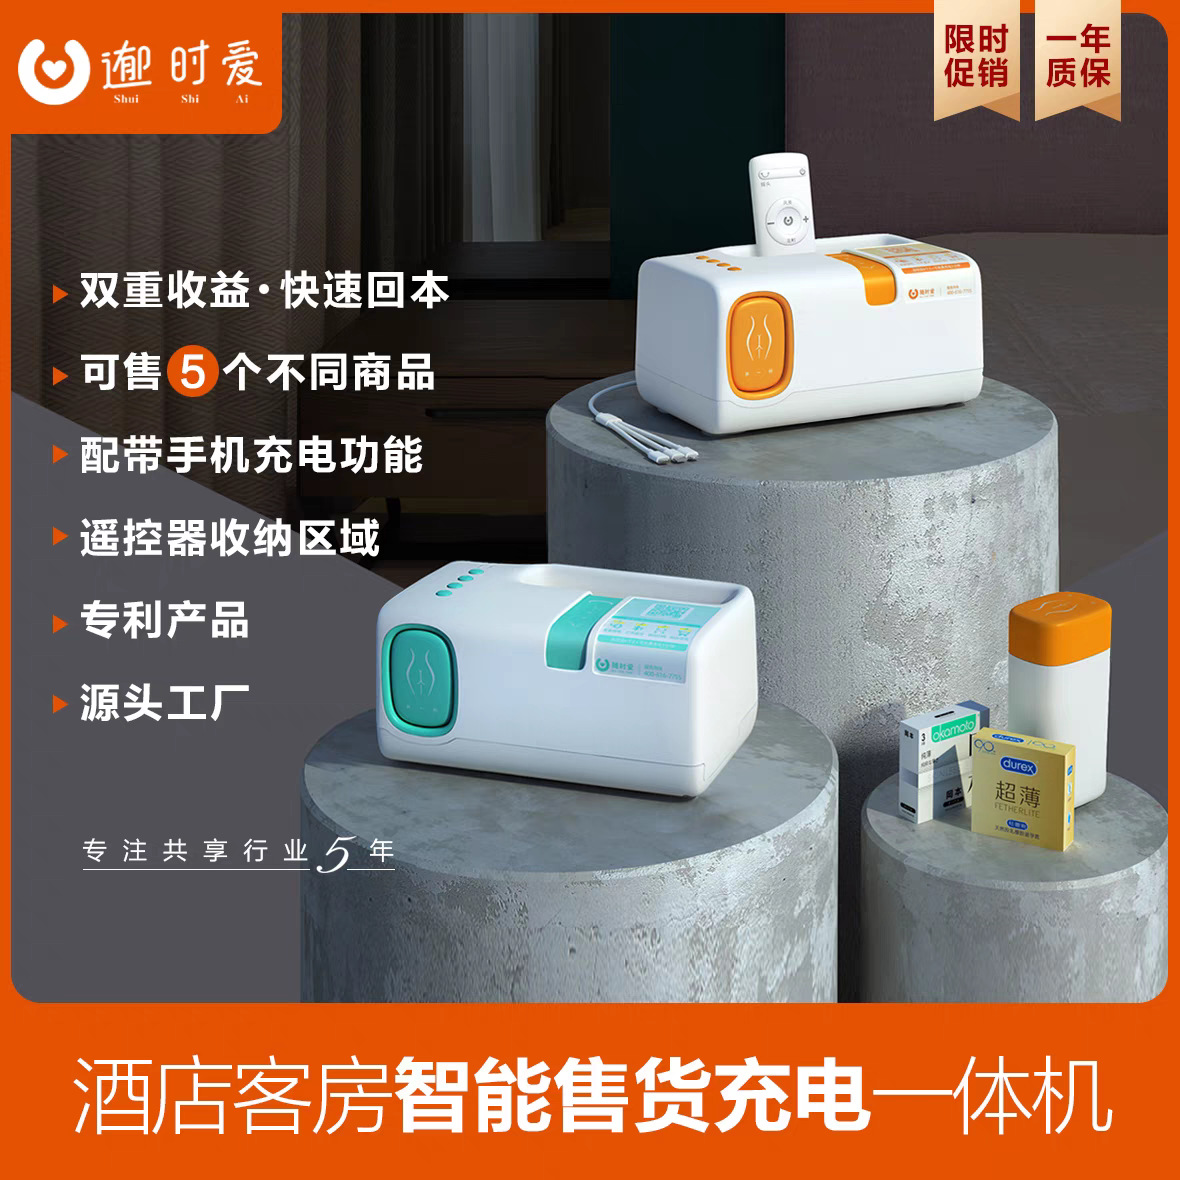 小型自动售货机酒店客房扫码共享设备充电器自带线来图LOGO定 制